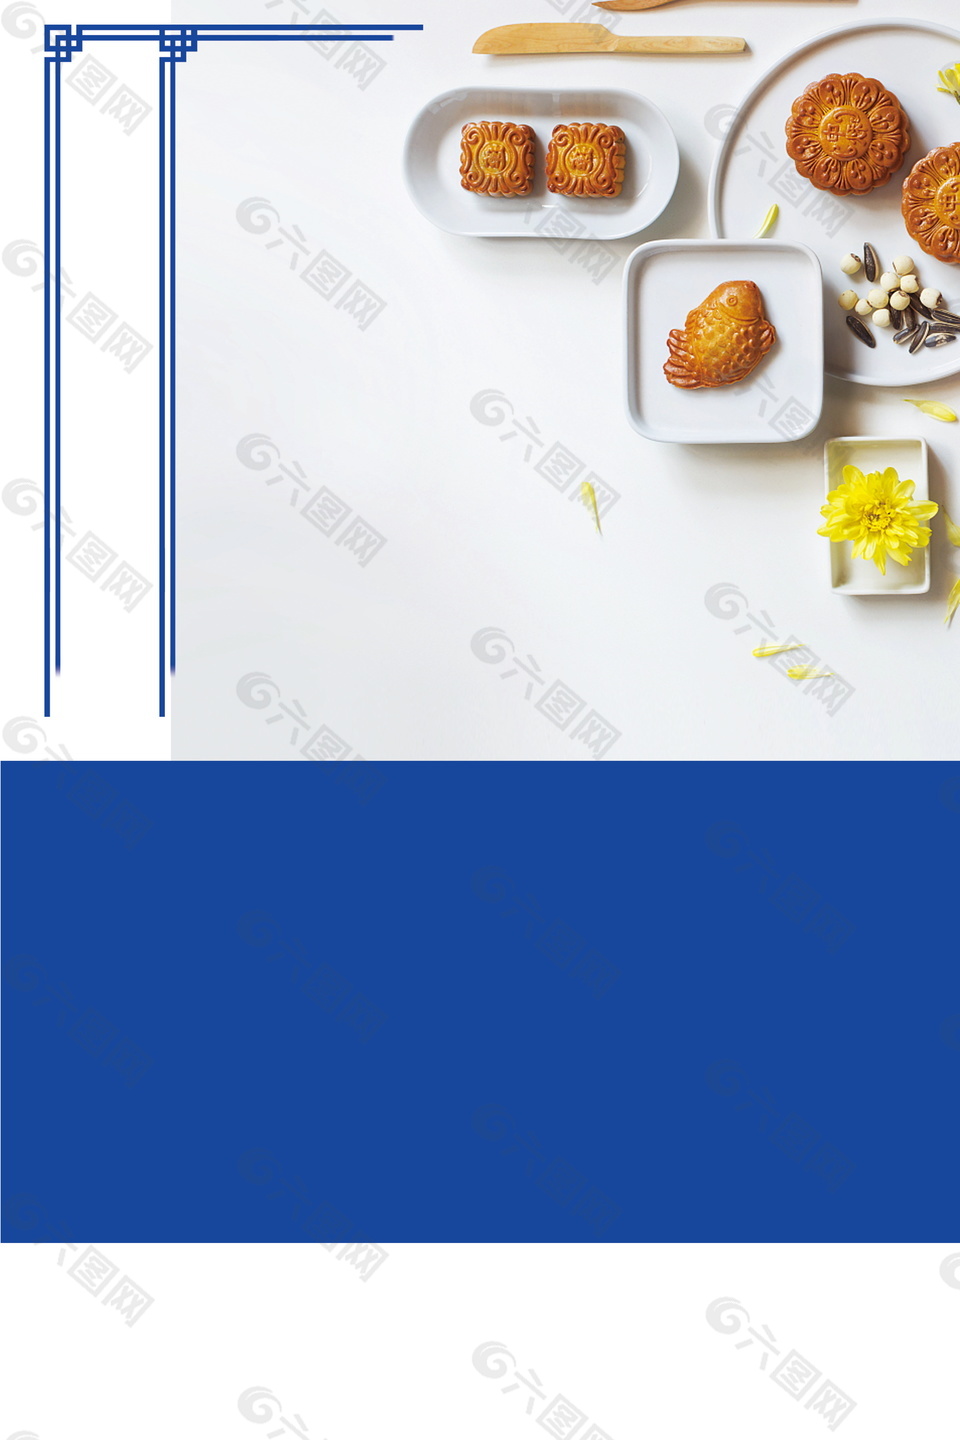 中秋节月饼海报背景设计